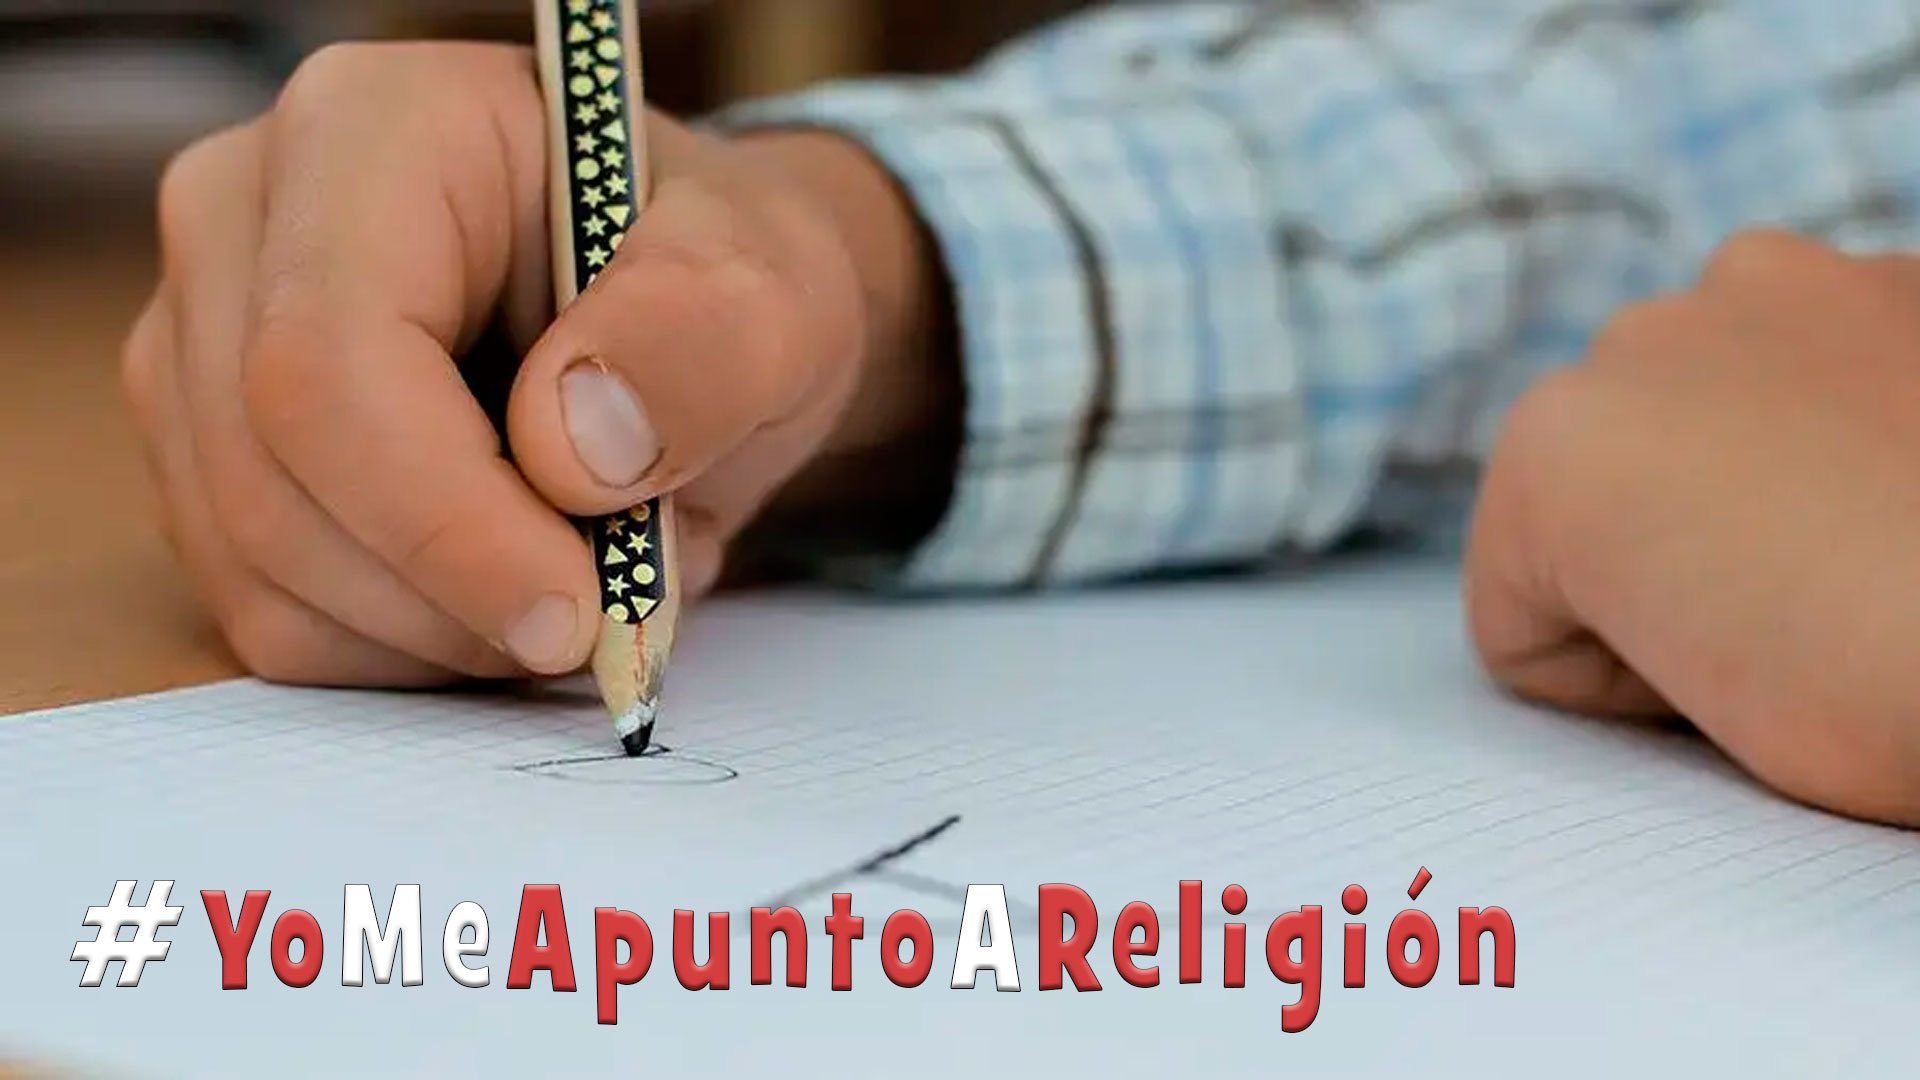 La asignatura de Religión sigue siendo una opción querida por el alumnado en Palencia y Castilla y León